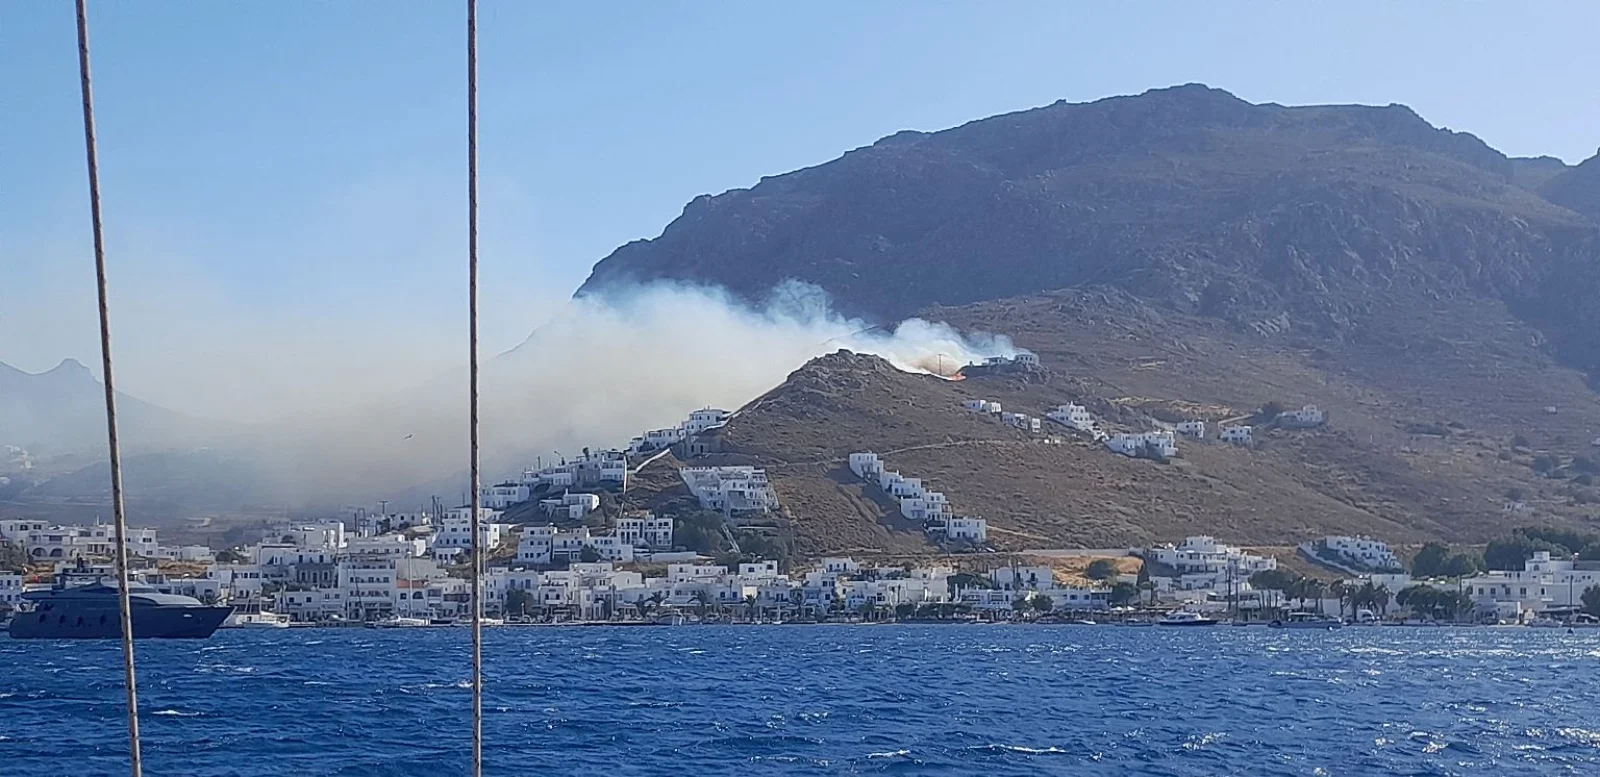 Εκκενώνονται 6 οικισμοί από τη φωτιά στη Σέριφο -«Αν βρίσκεστε στις περιοχές Ράμος και Λιβάδι απομακρυνθείτε» [βίντεο]